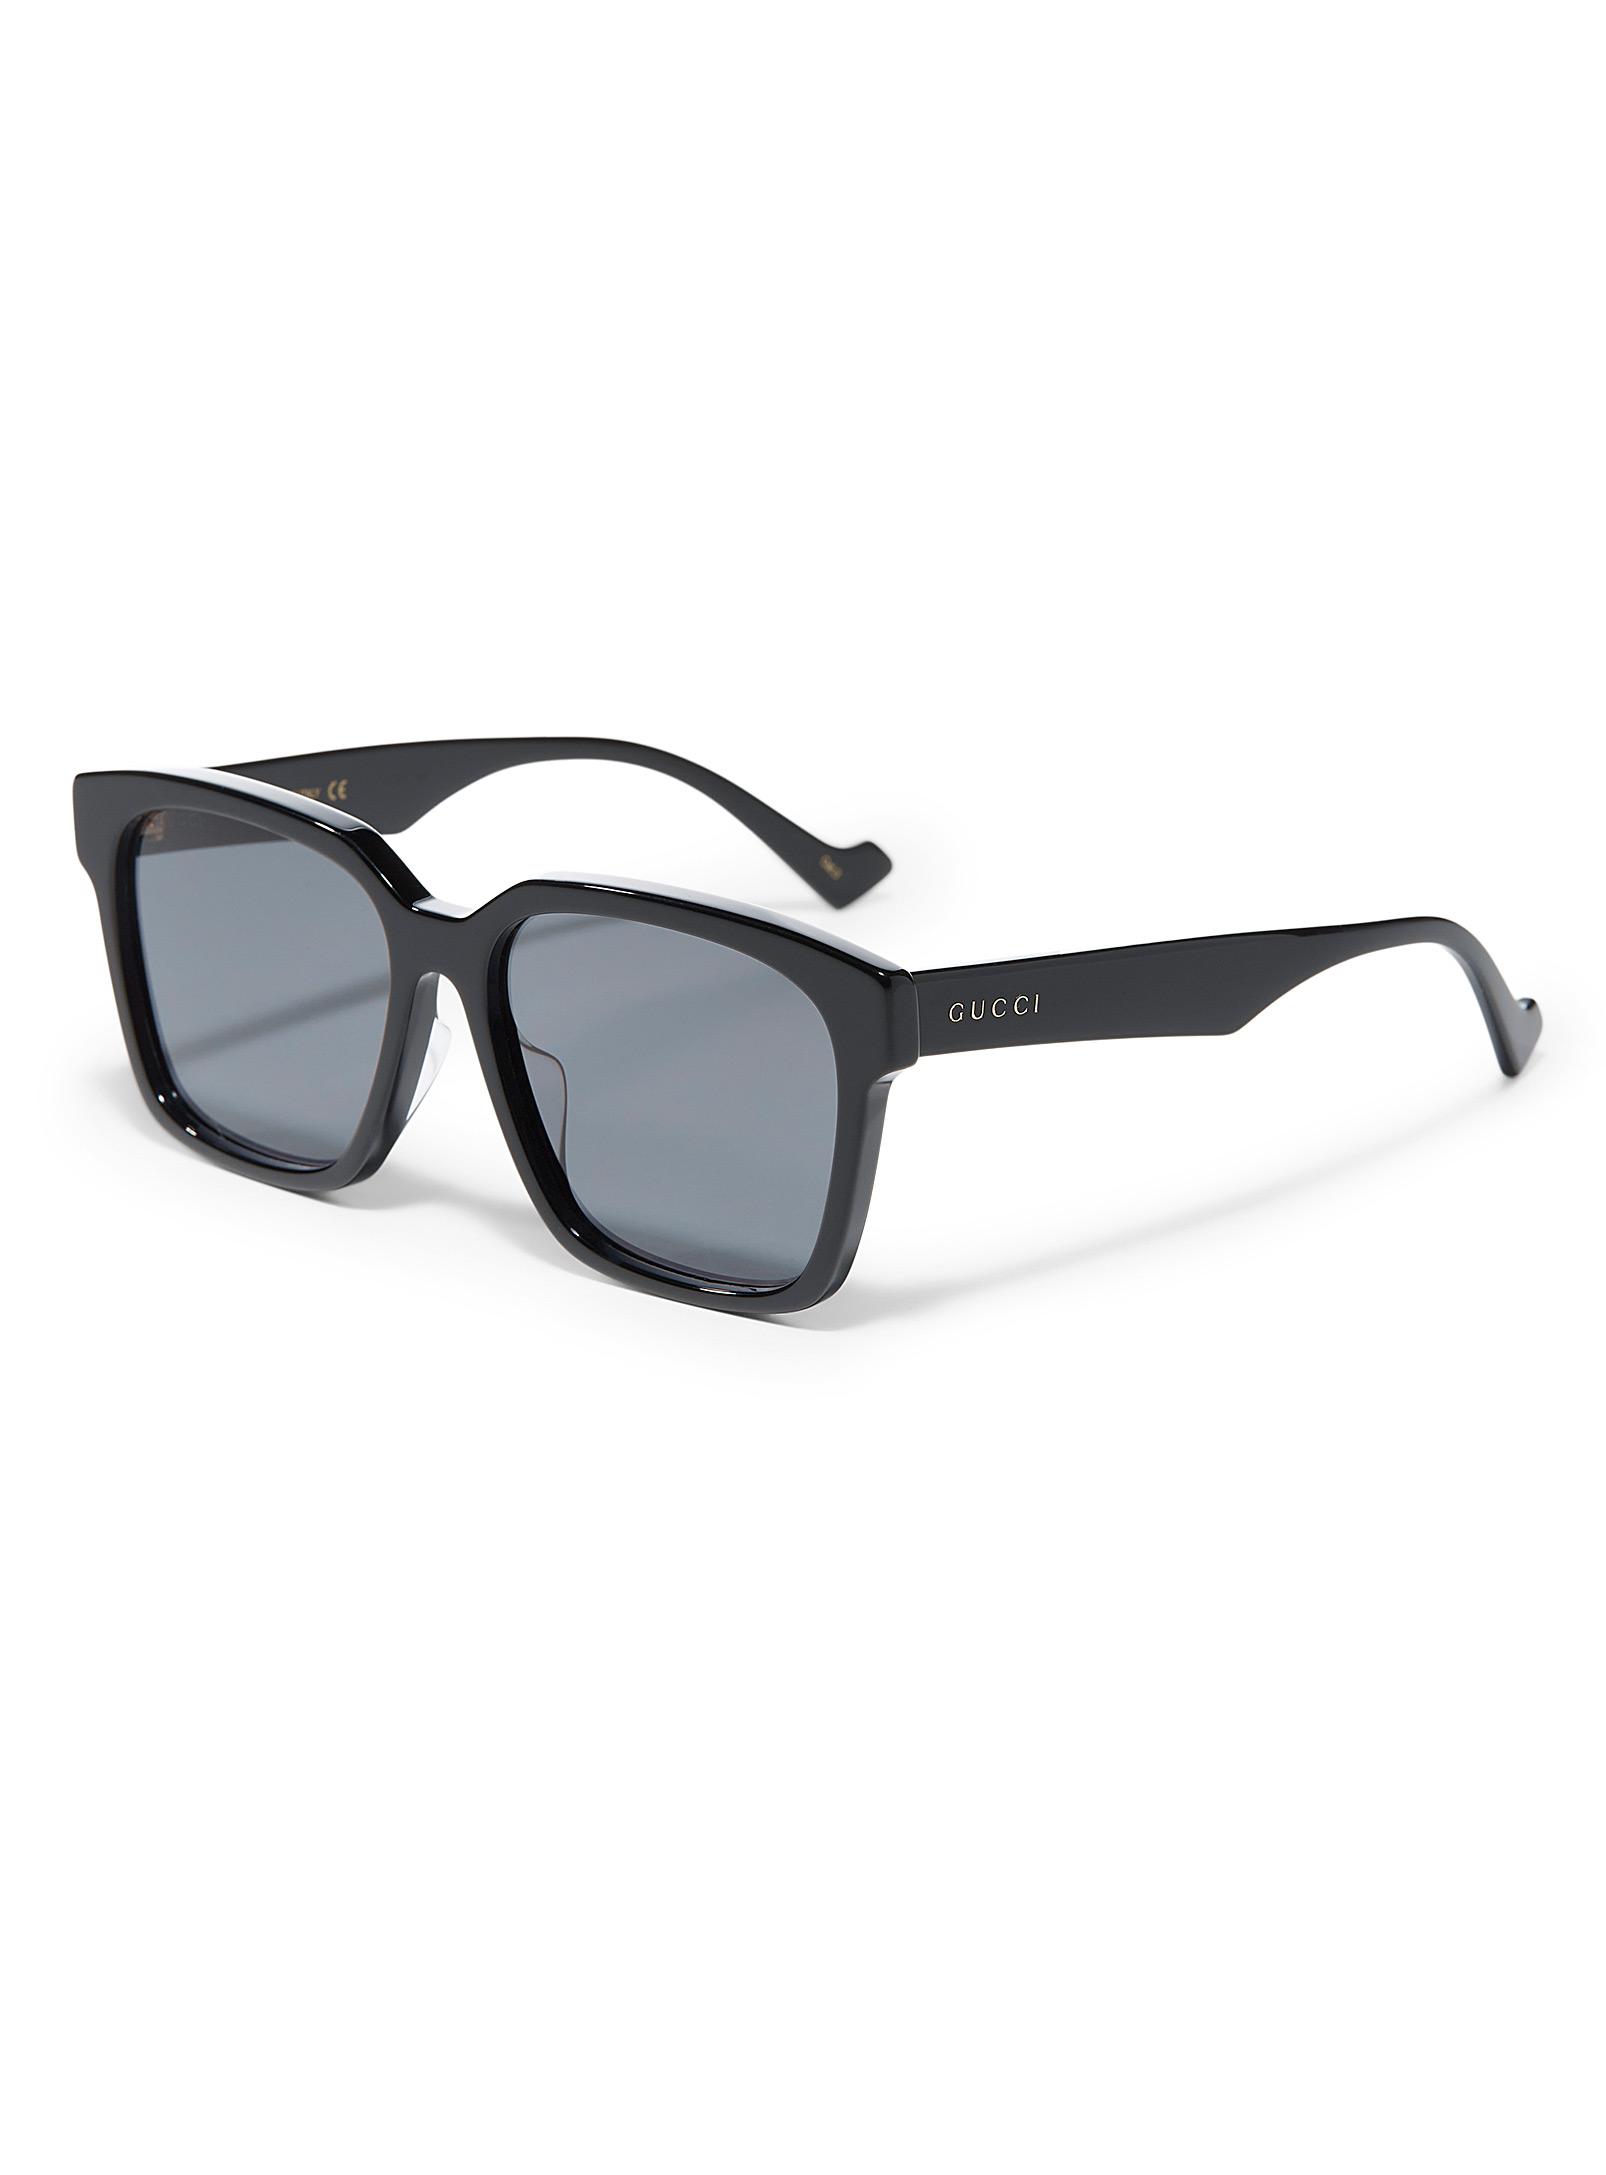 Gucci - Les lunettes de soleil carrées noires